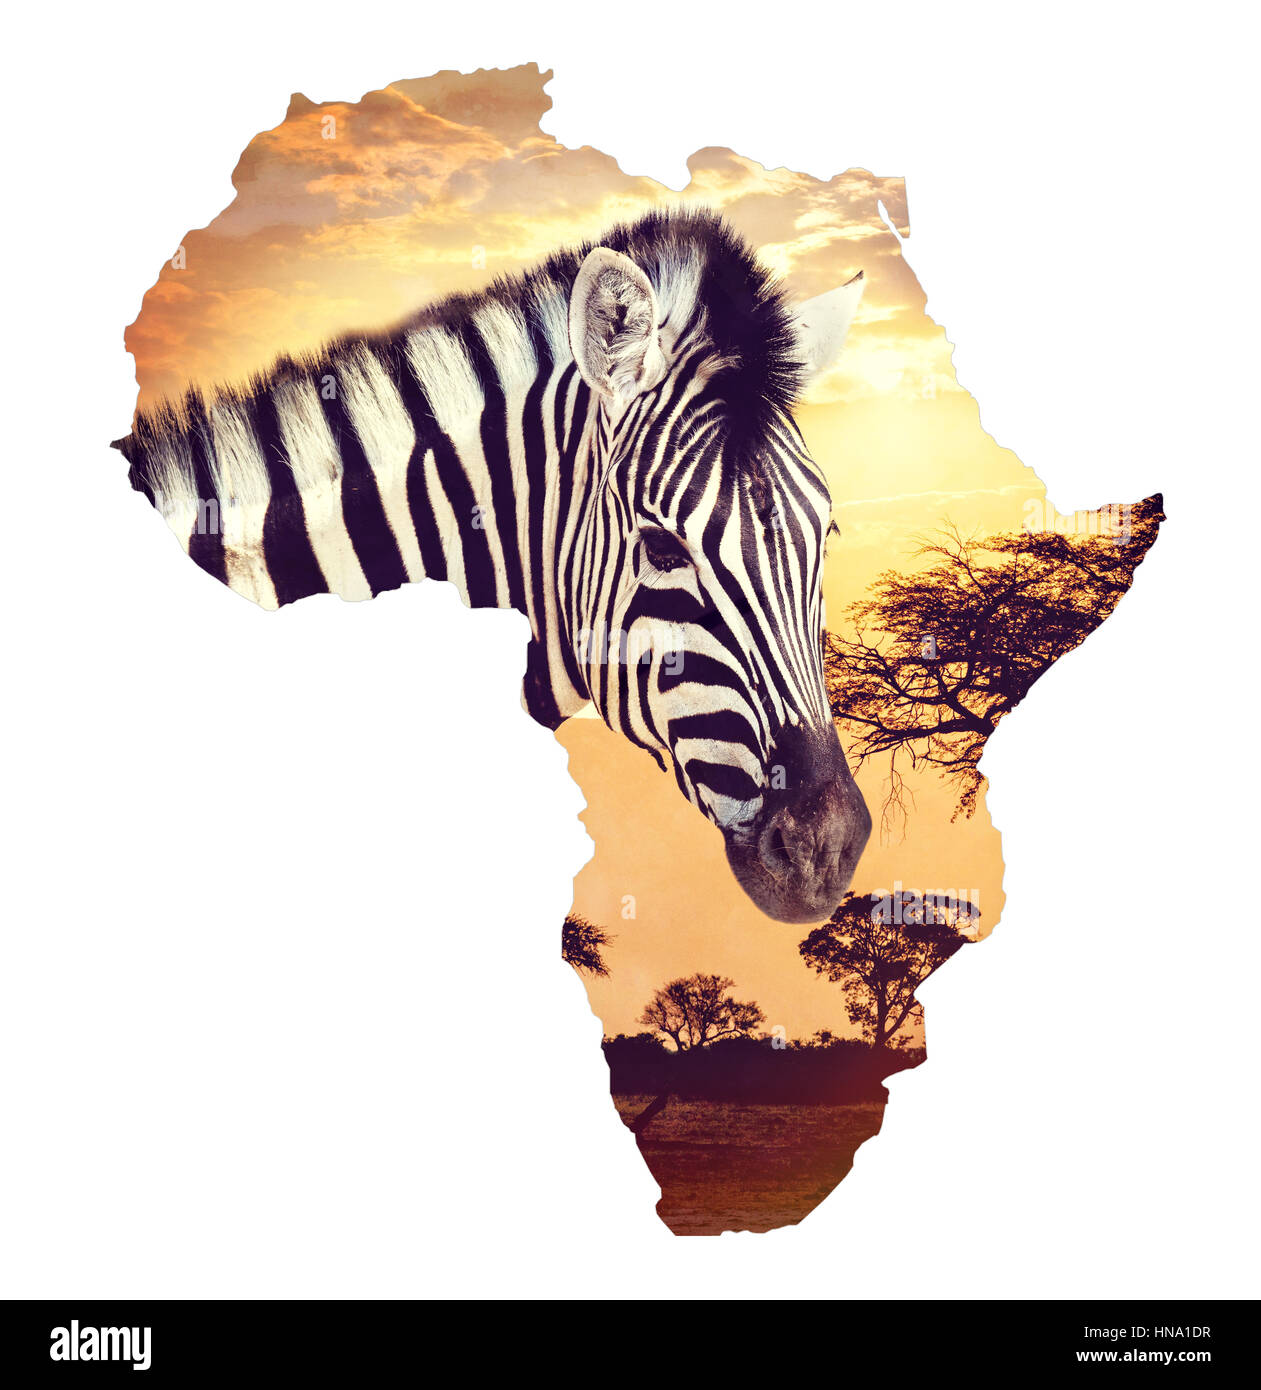 Zebra ritratto sul tramonto africano con sfondo di acacia. Mappa, Continente africano. Africa safari natura fauna selvaggia e di concetto Foto Stock